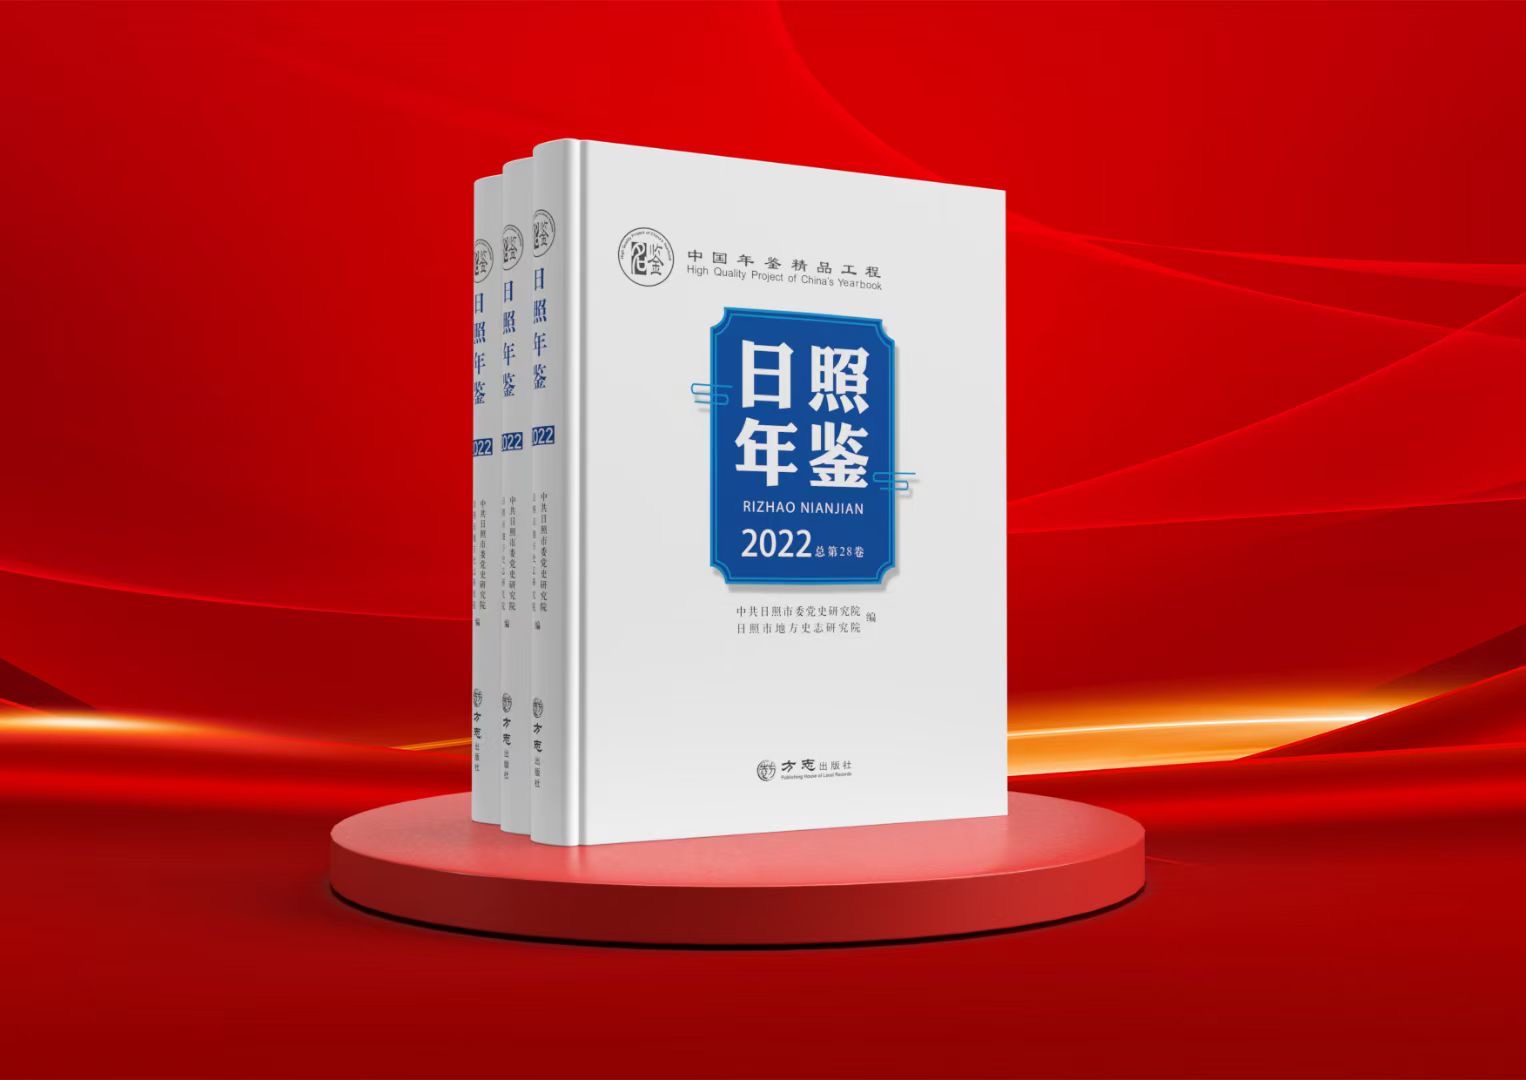 中国年鉴精品工程 《日照年鉴（2022）》 今日公开出版发行。